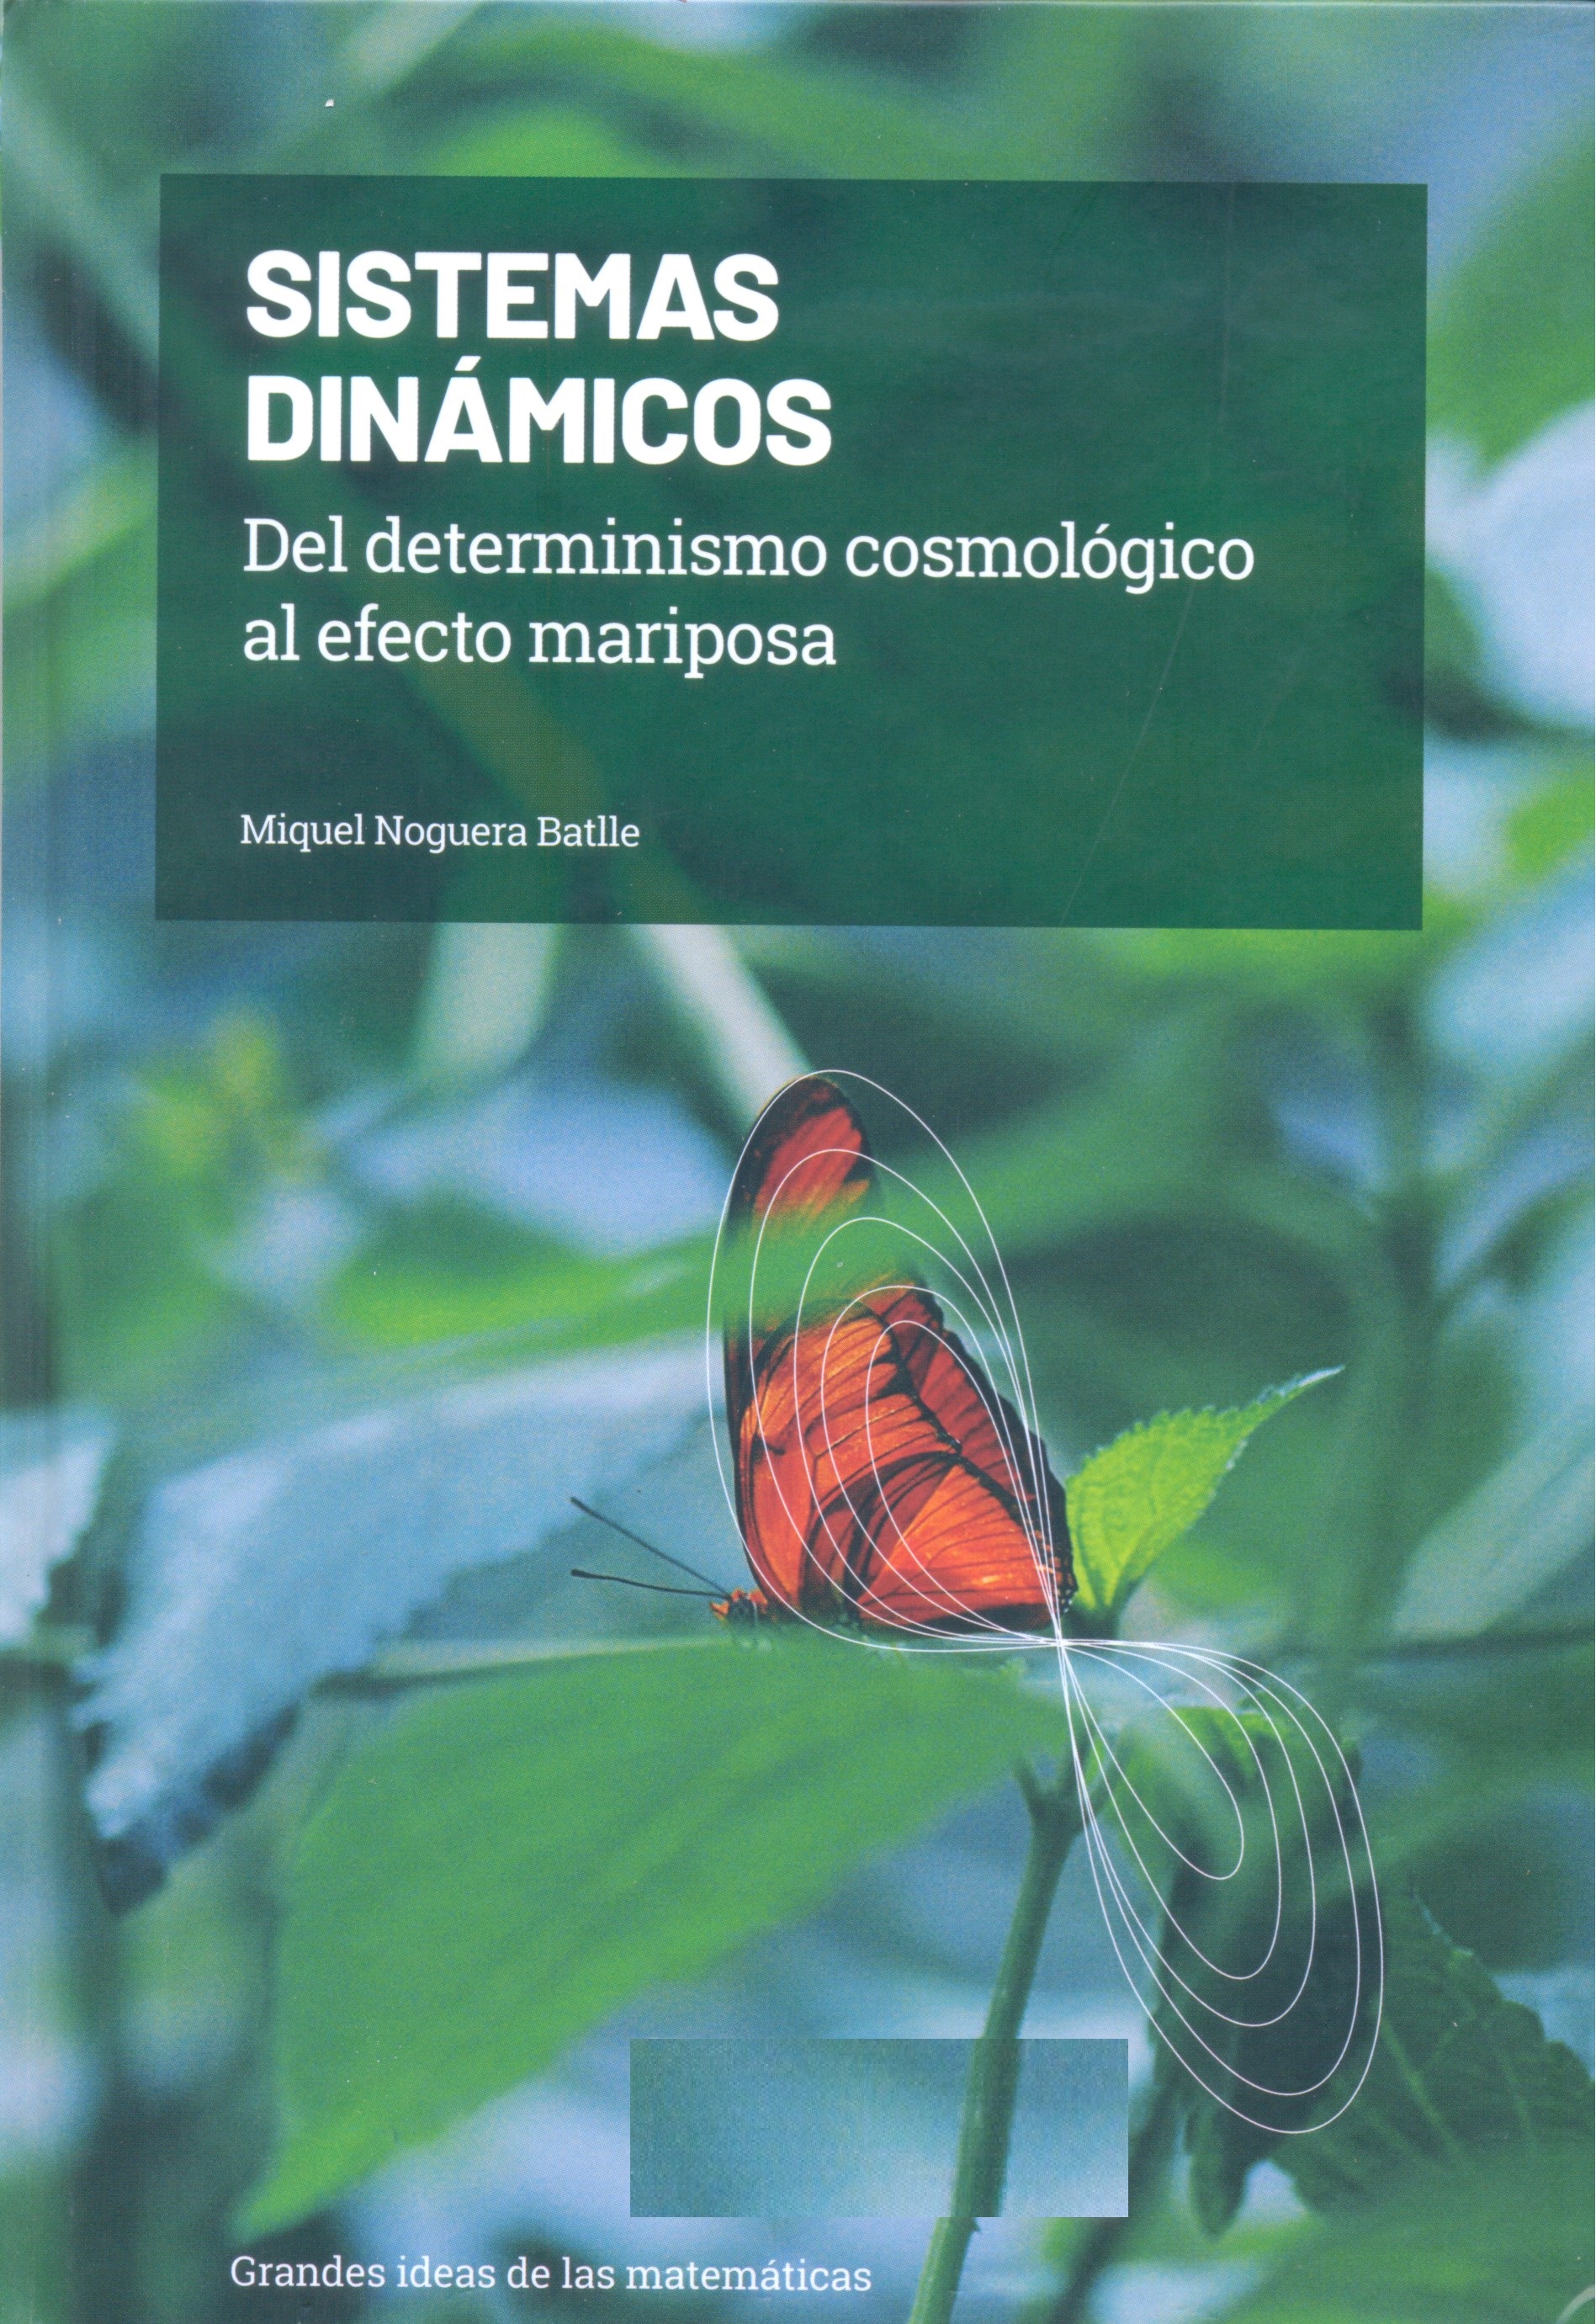 Sistemas dinámicos : del deteminismo cosmológico al efecto mariposa / Miquel Noguera Batlle